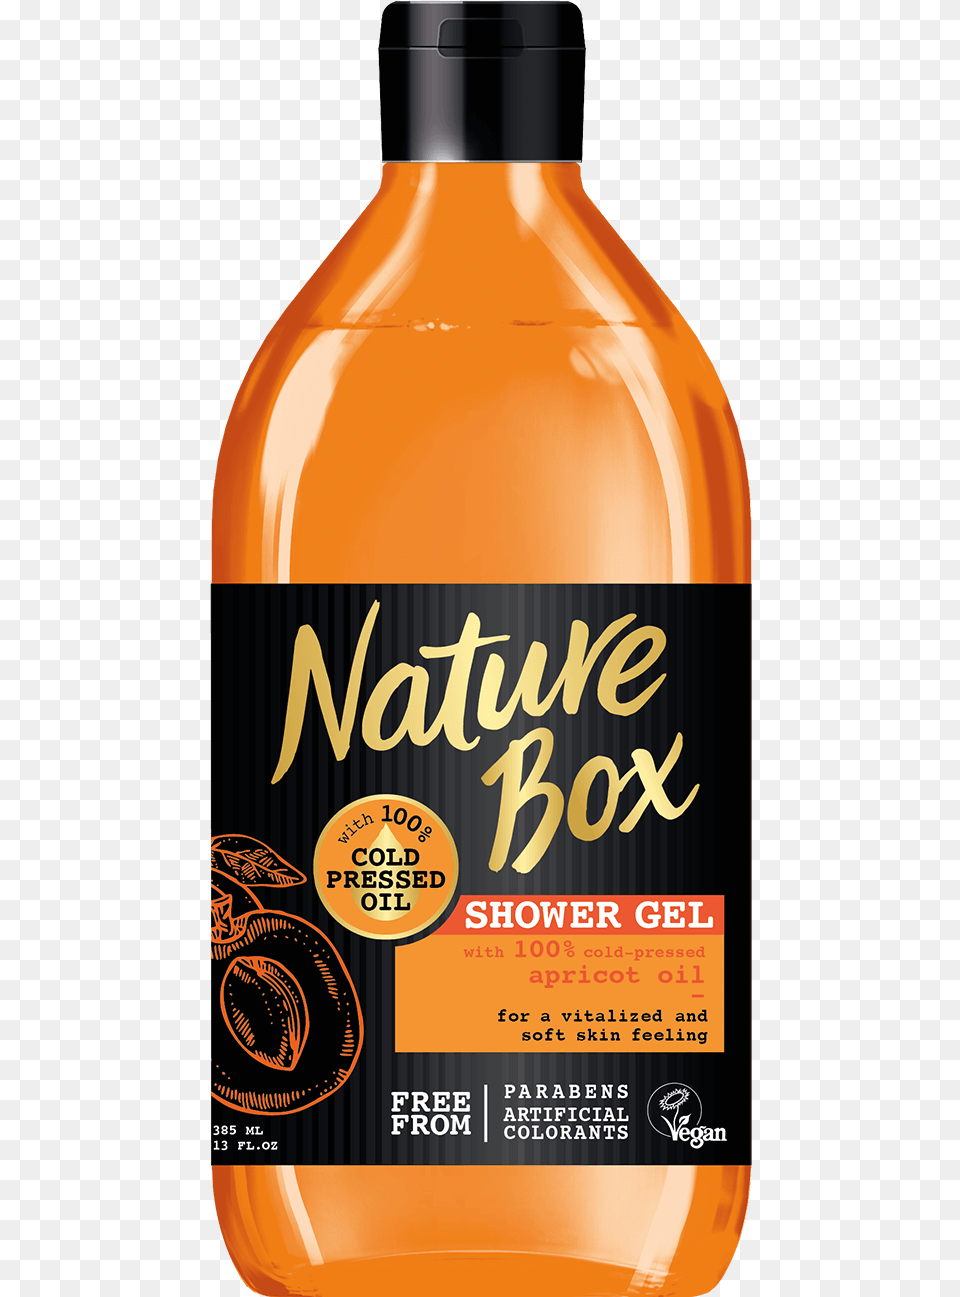 Naturebox Com Skin Apricot Oil Shower Gel, Bottle, Can, Tin, Food Png Image